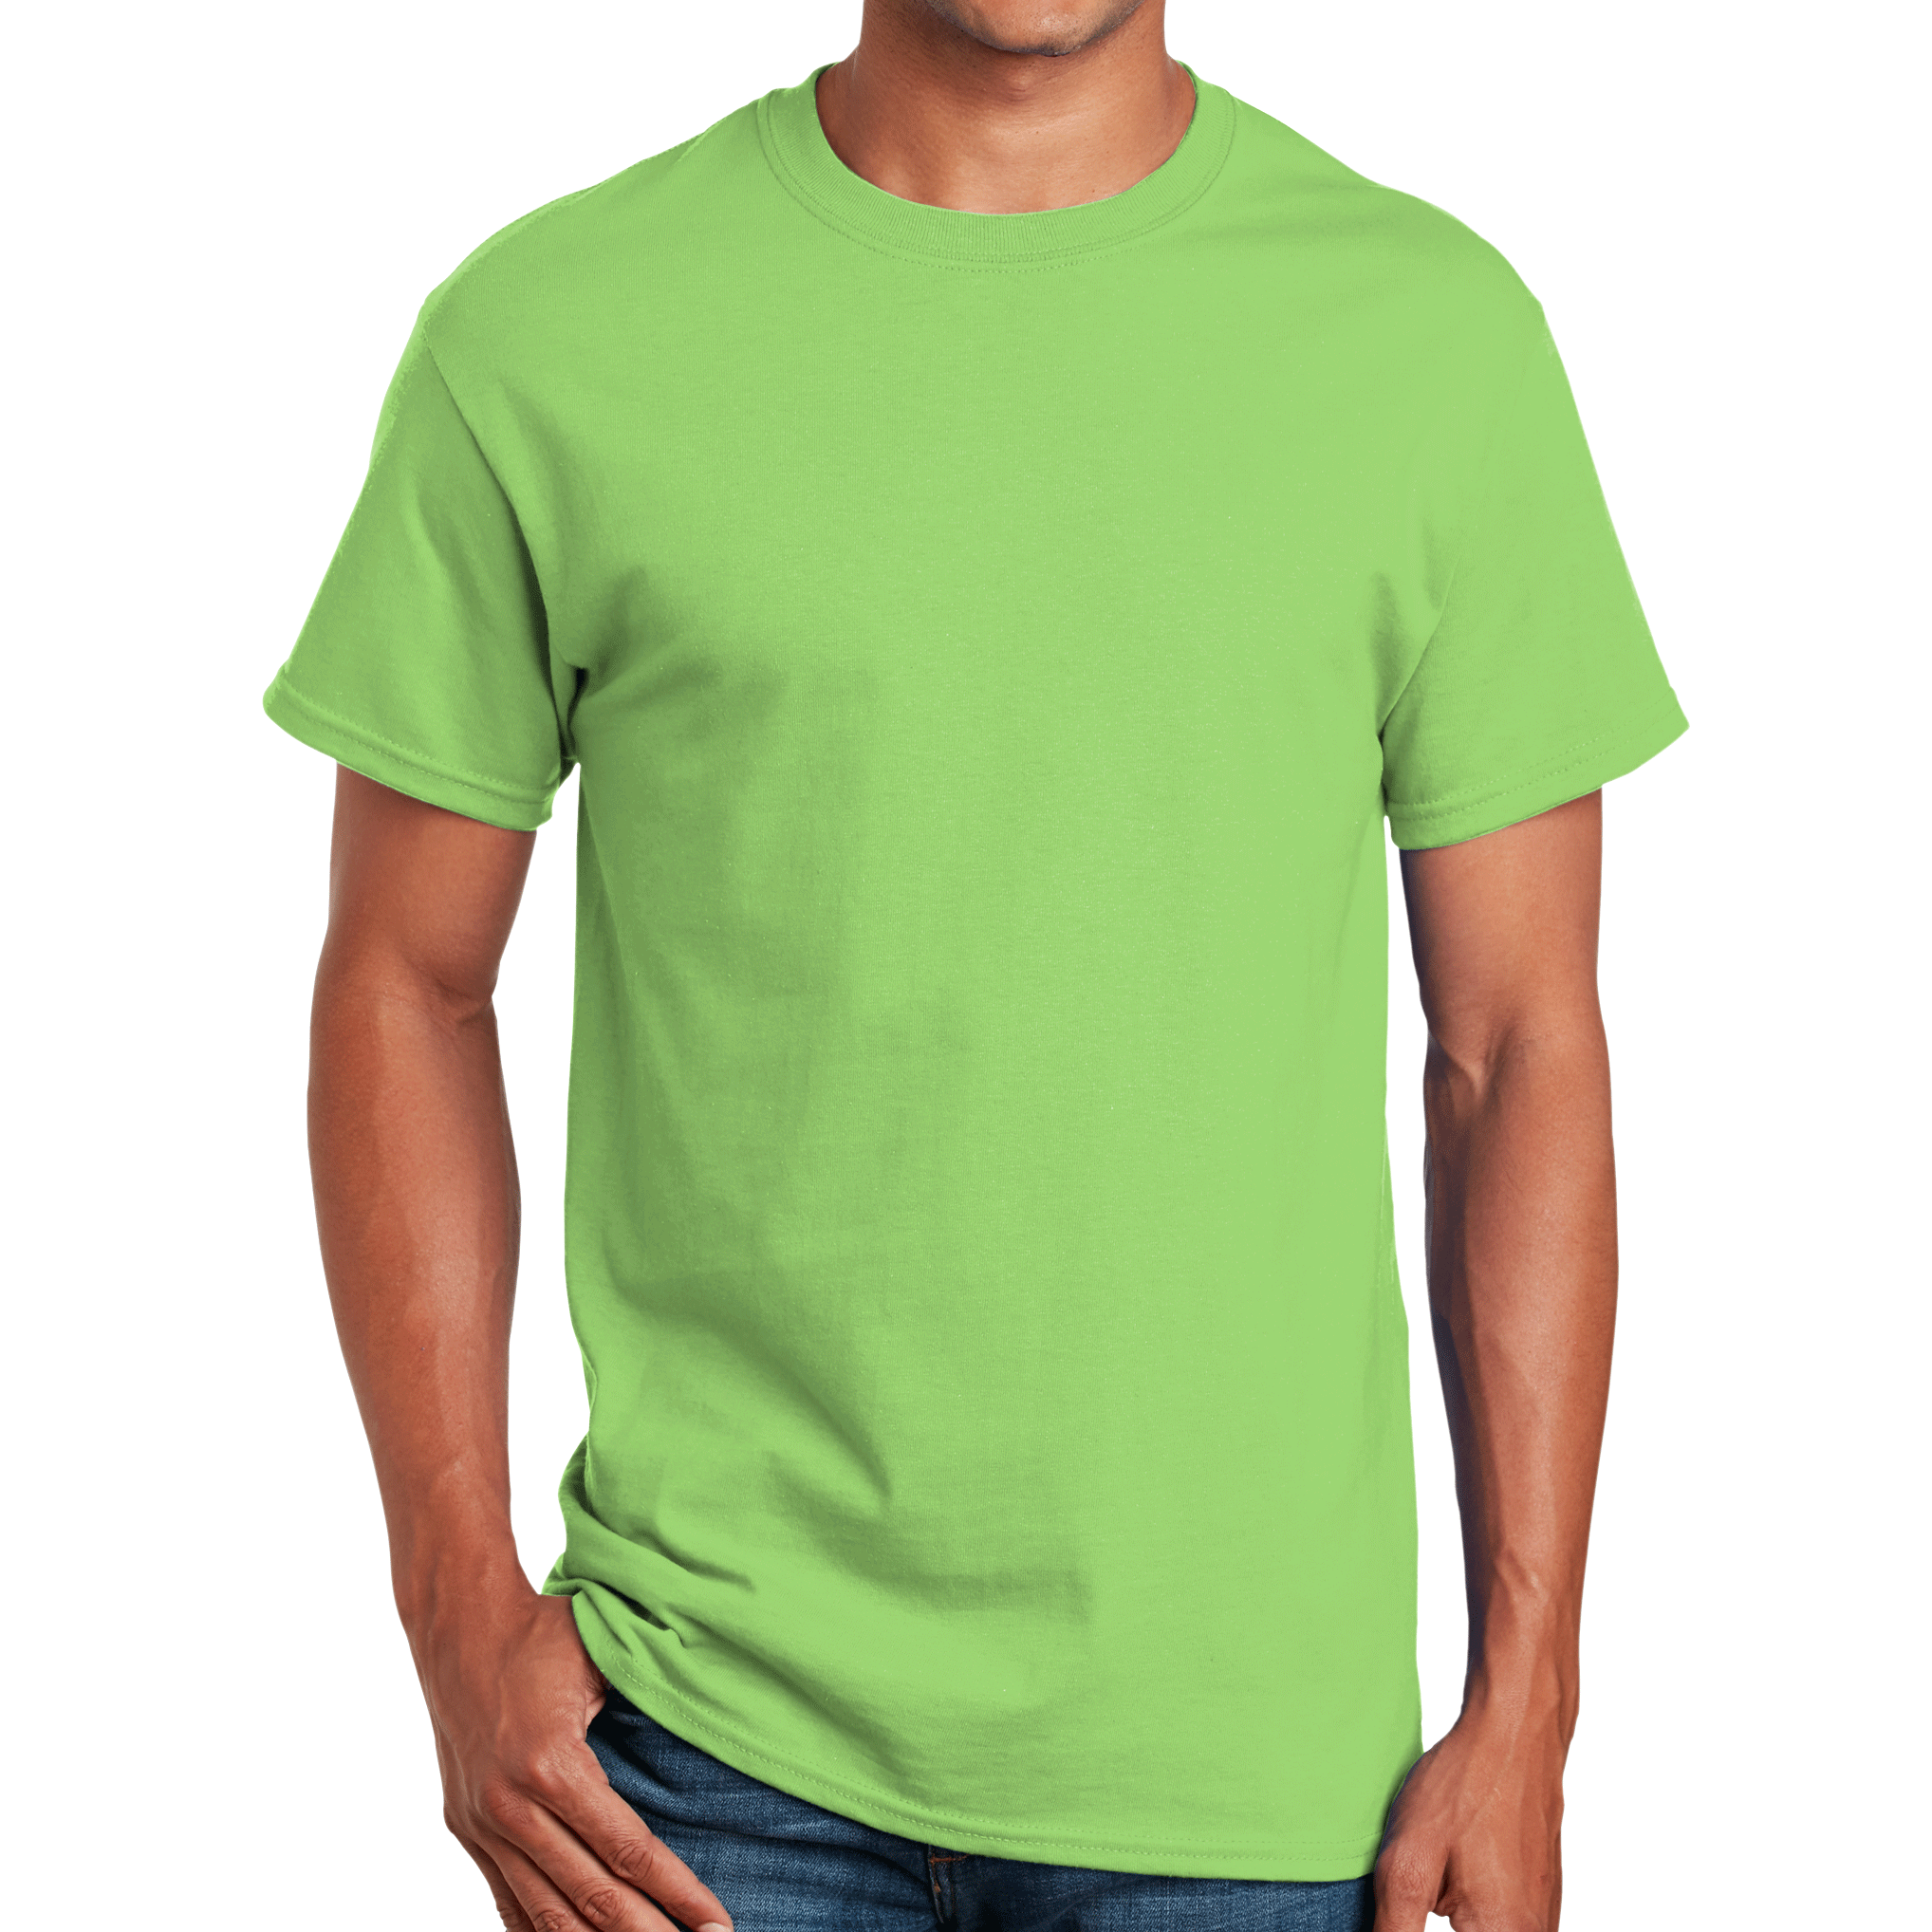 DOT NYC Cotton T-Shirt – Youth Fanatics Gear